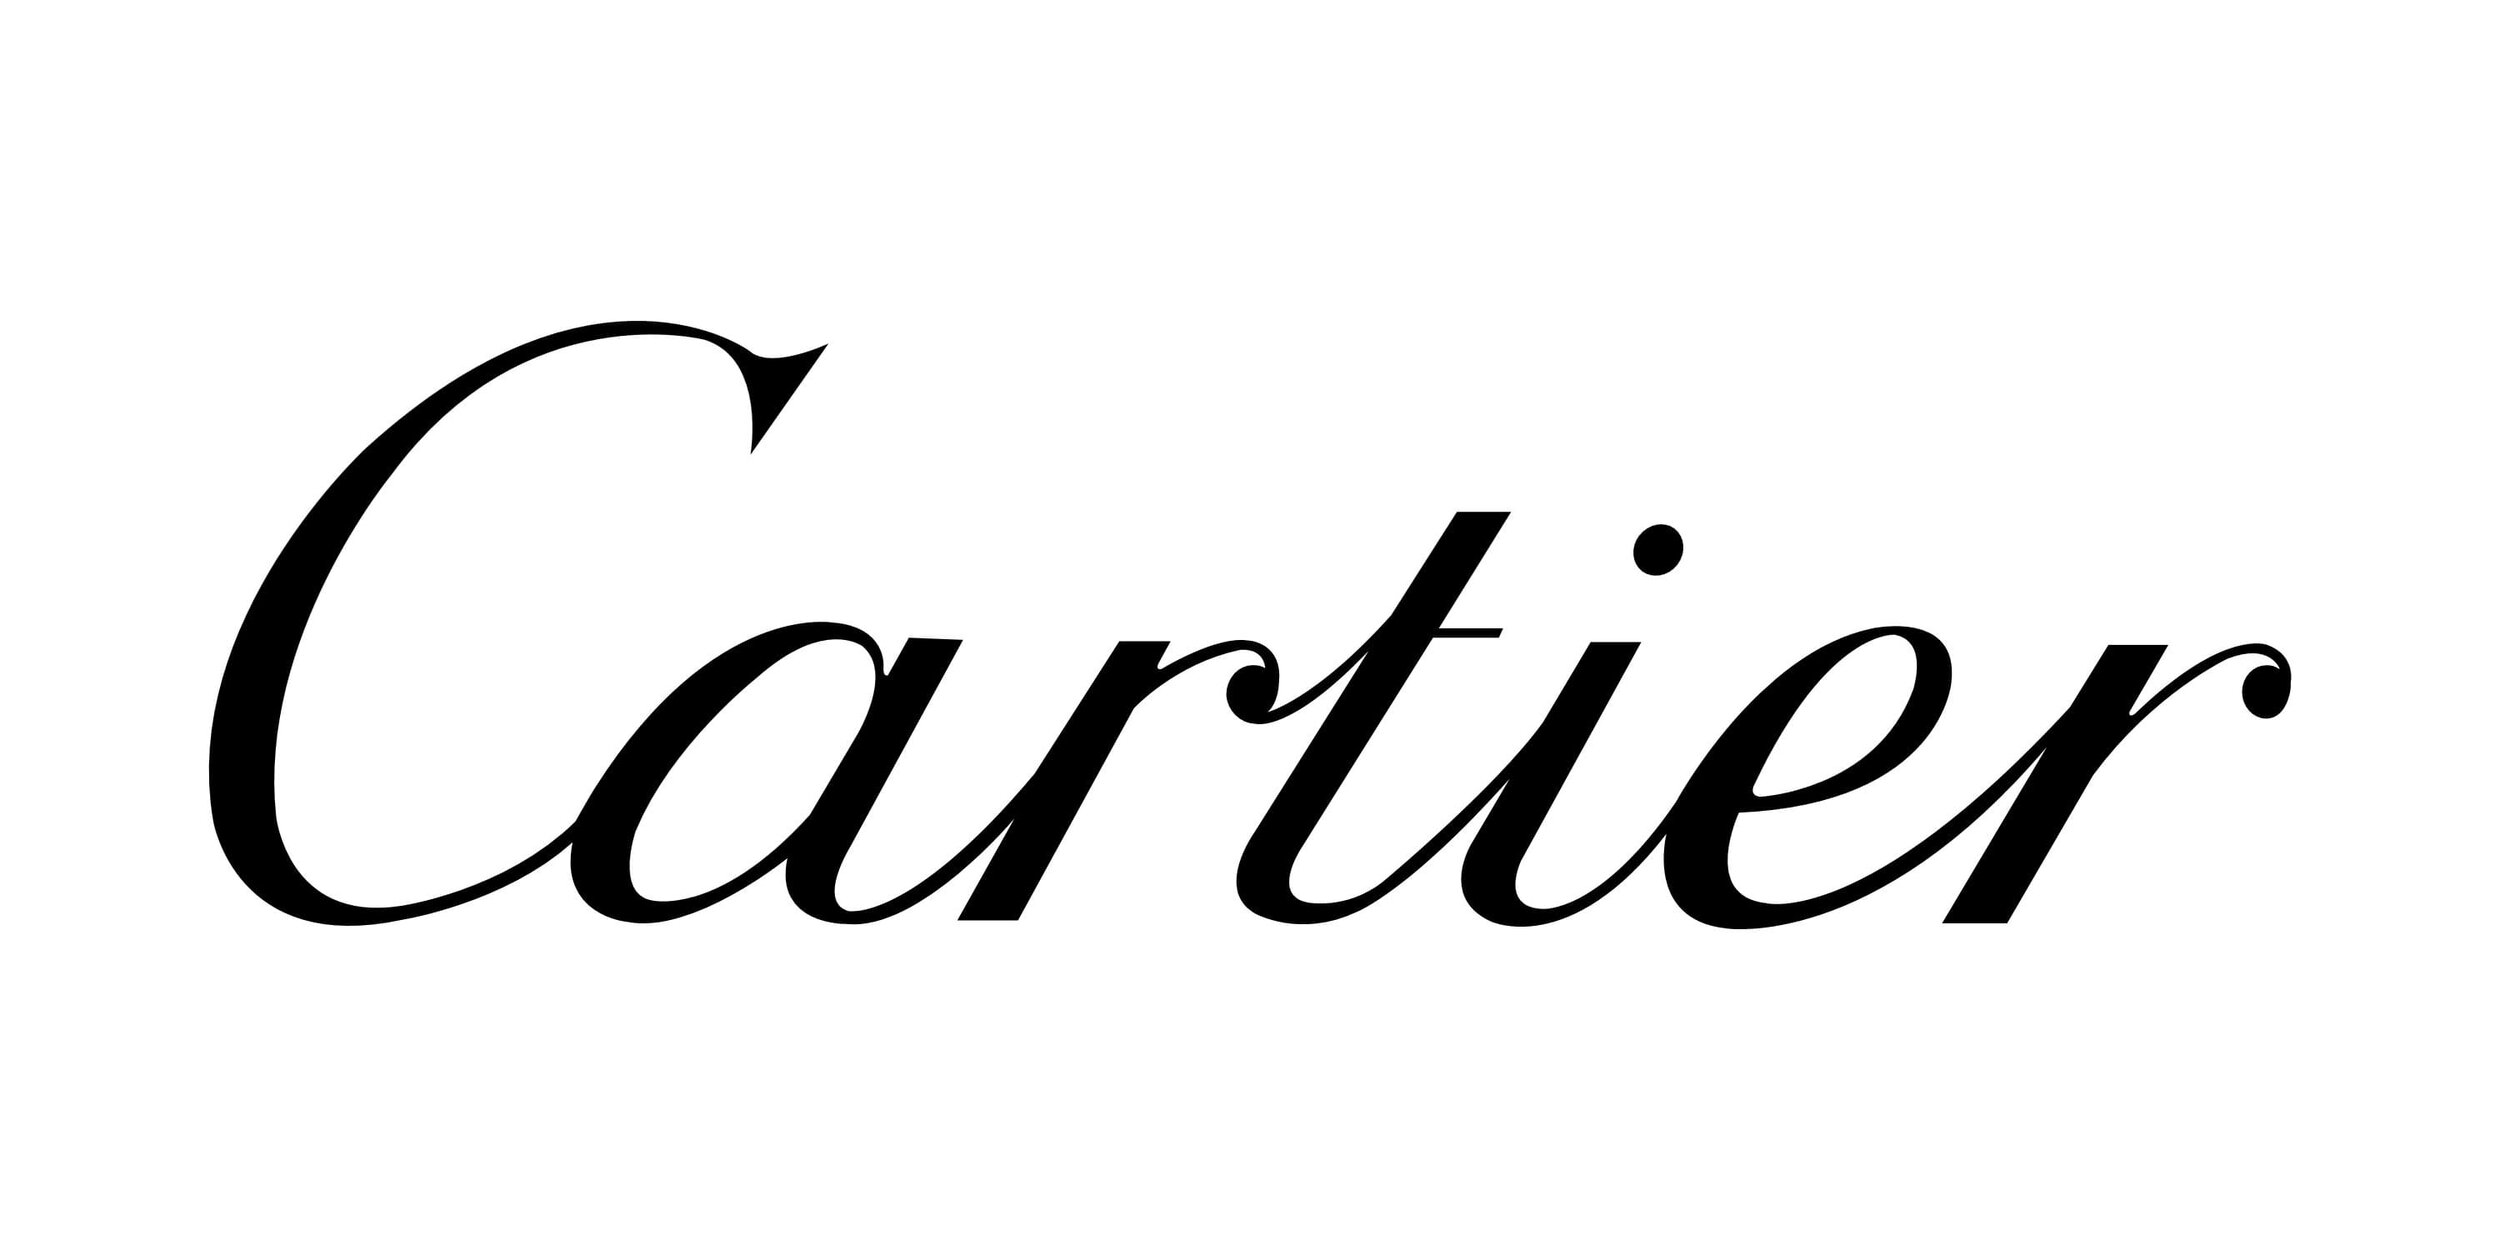 Cartier-logo.jpg